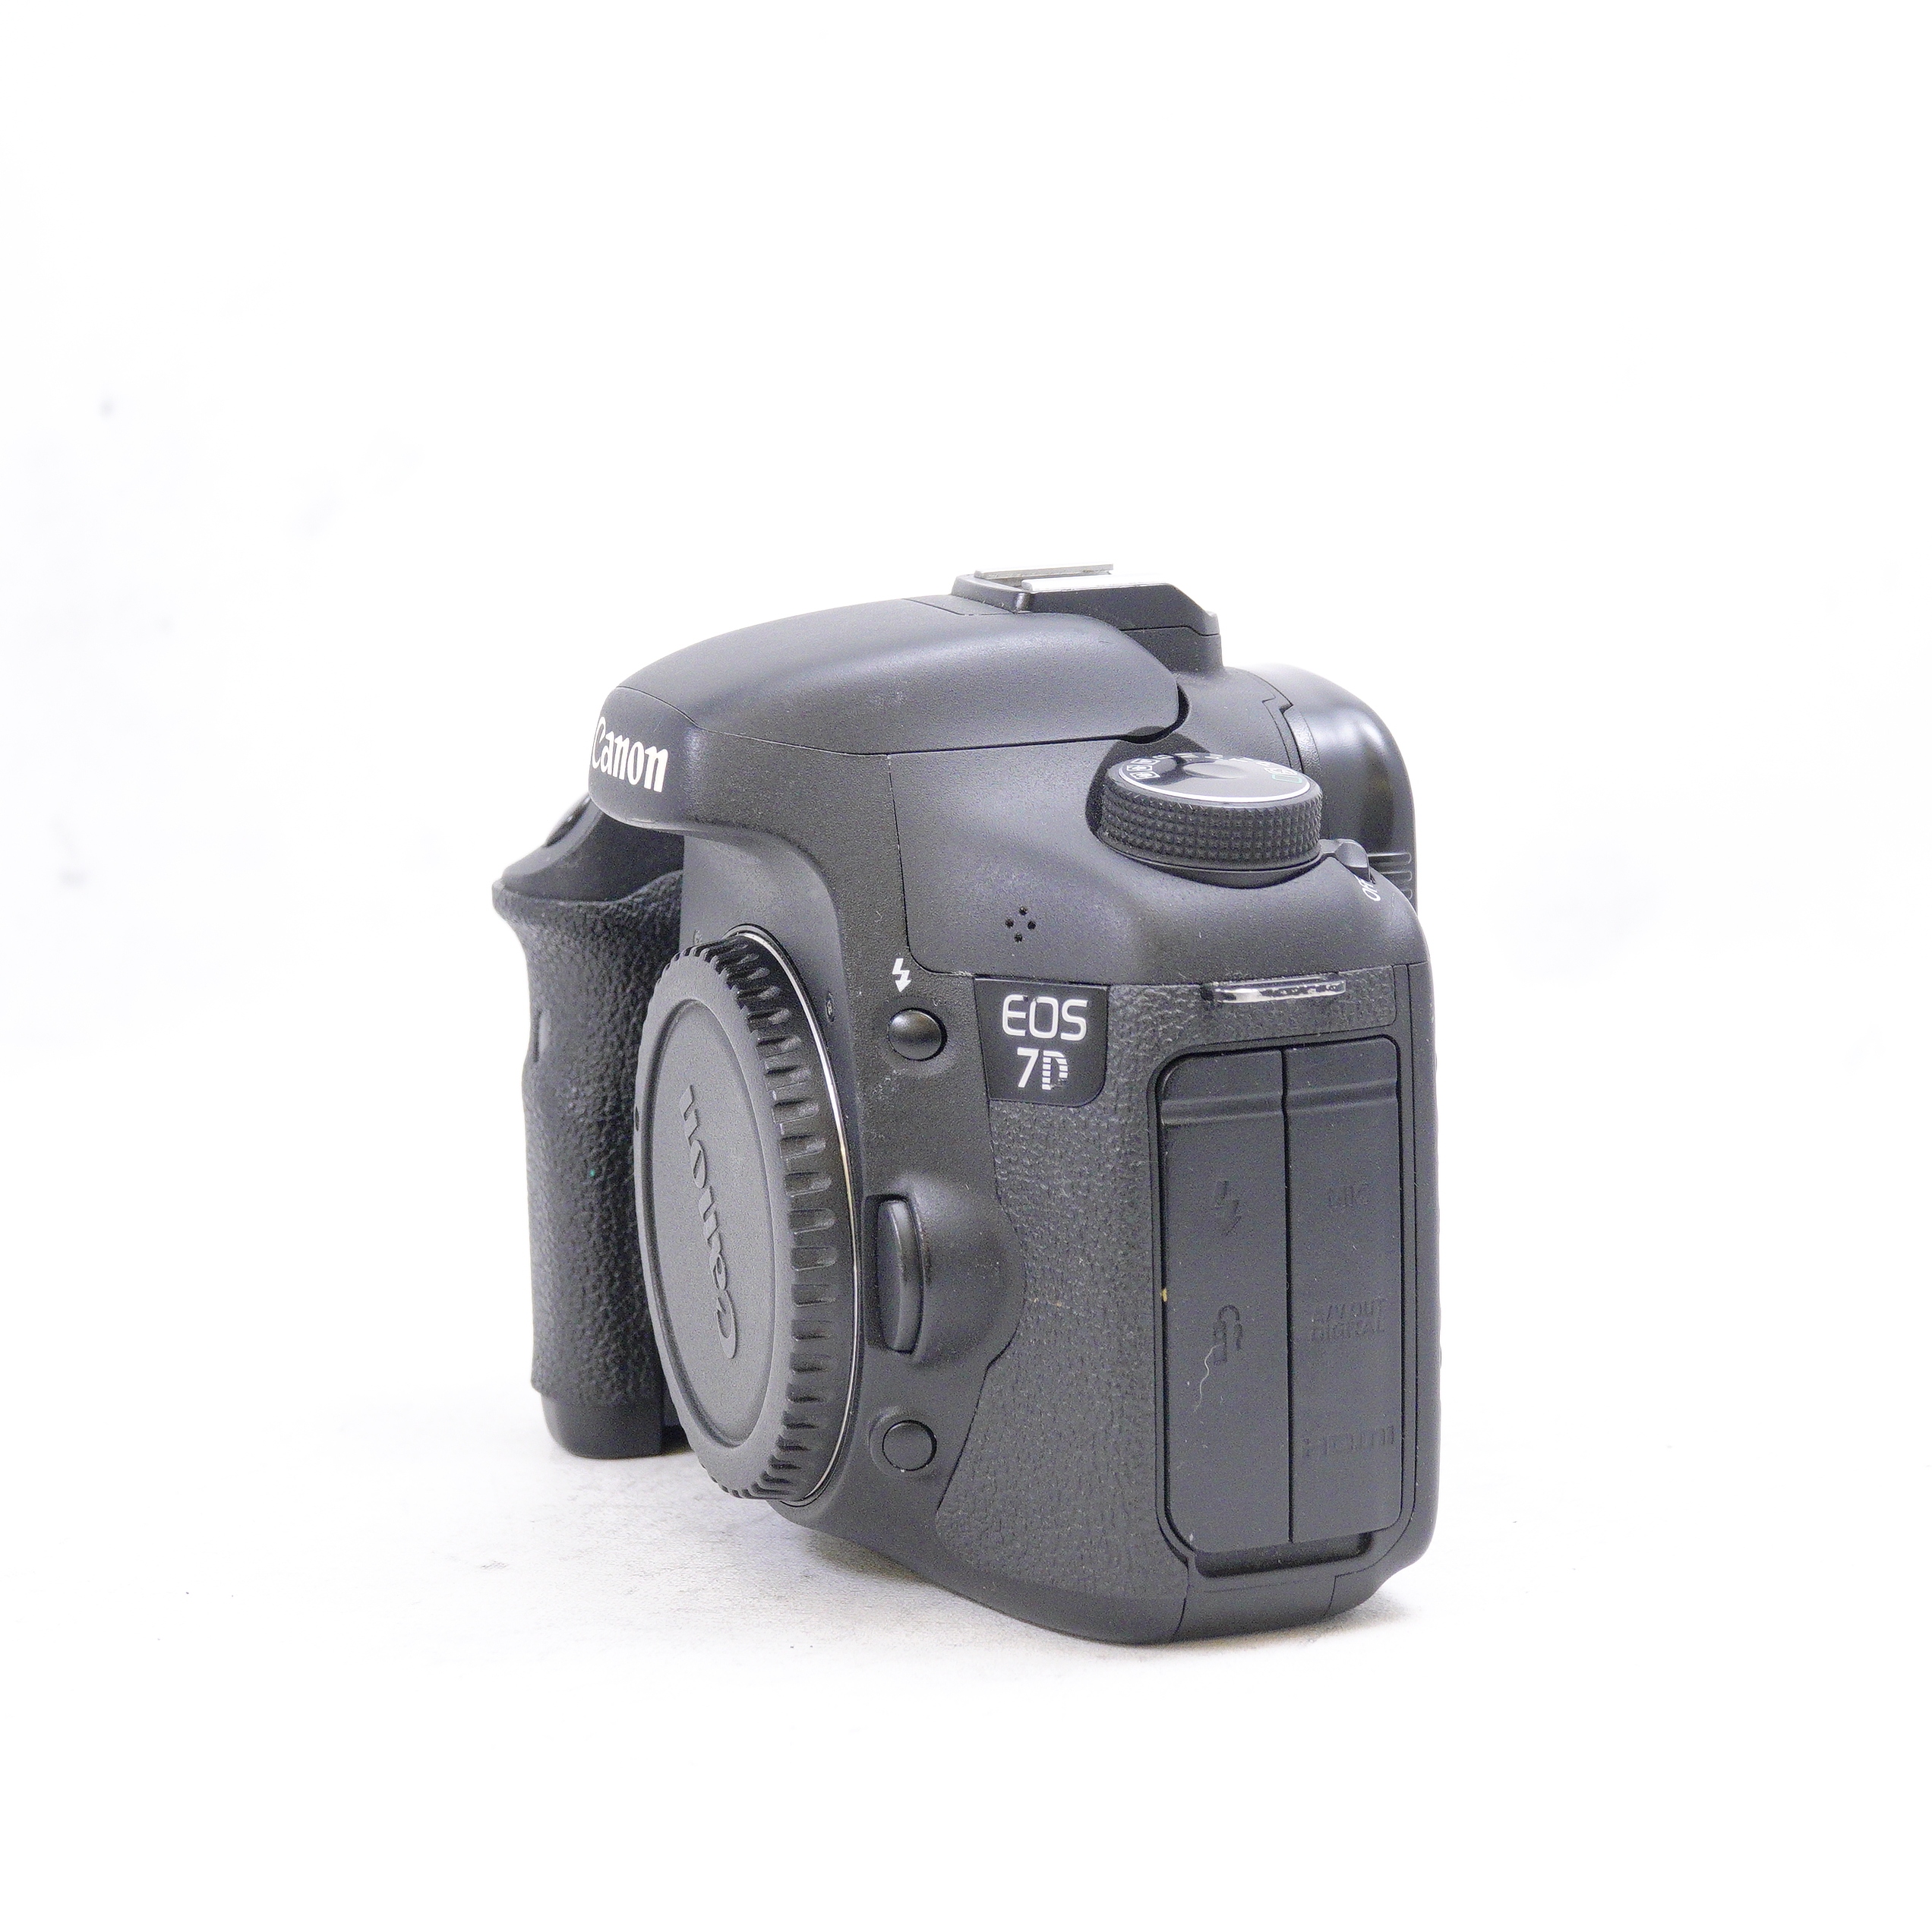 Canon 7D Body + battery Grip alternativo - Usado